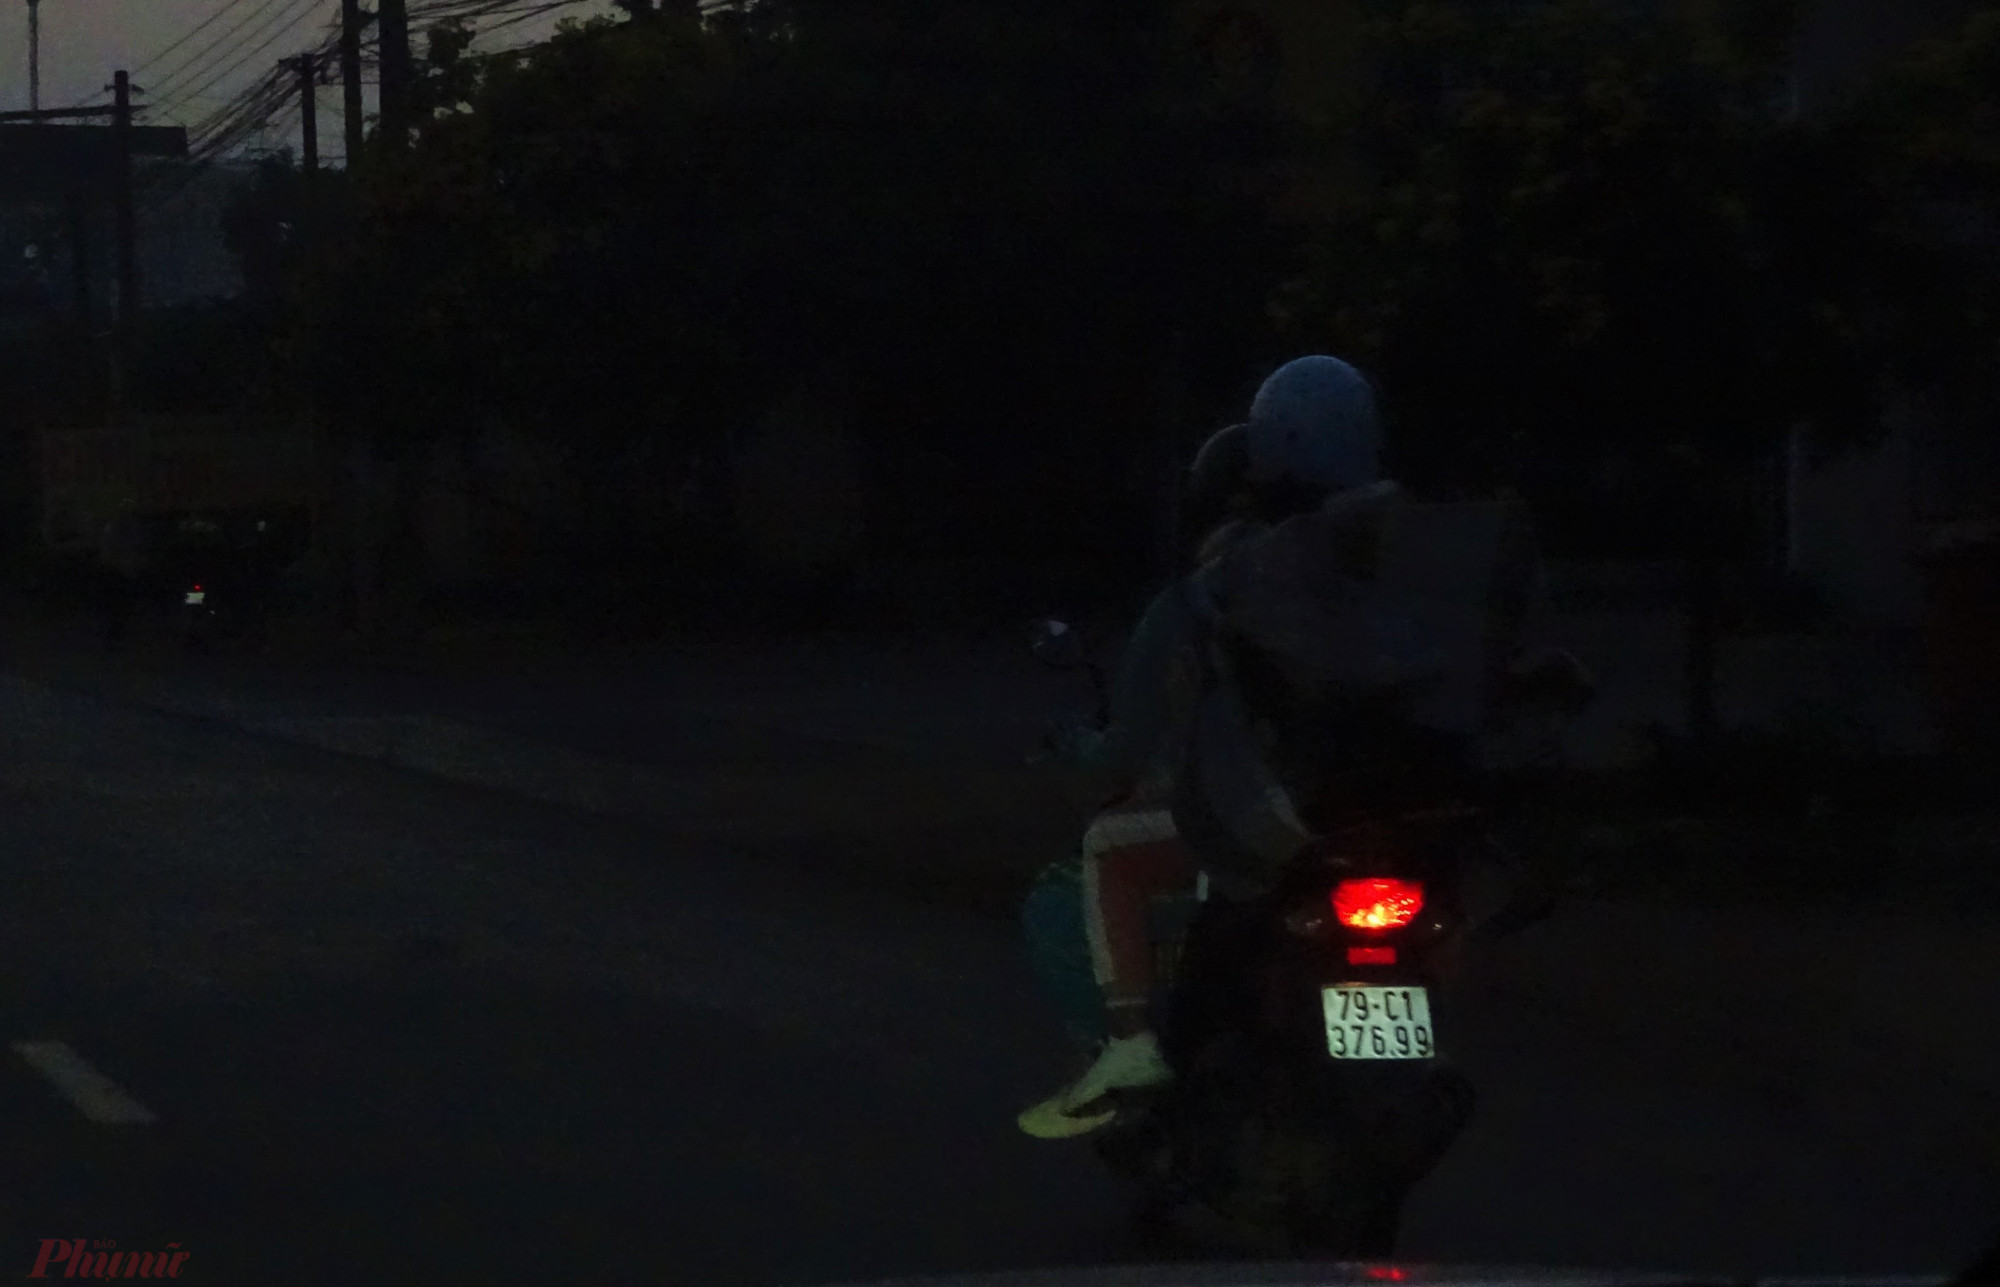 Một số người cho biết, họ di chuyển lúc rạng sáng để tránh việc kẹt xe khi đi qua địa phận tỉnh Đồng Nai. Vào những ngày cao điểm, Quốc lộ 1 đoạn qua tỉnh Đồng Nai thường kẹt cứng người từ buổi sáng.